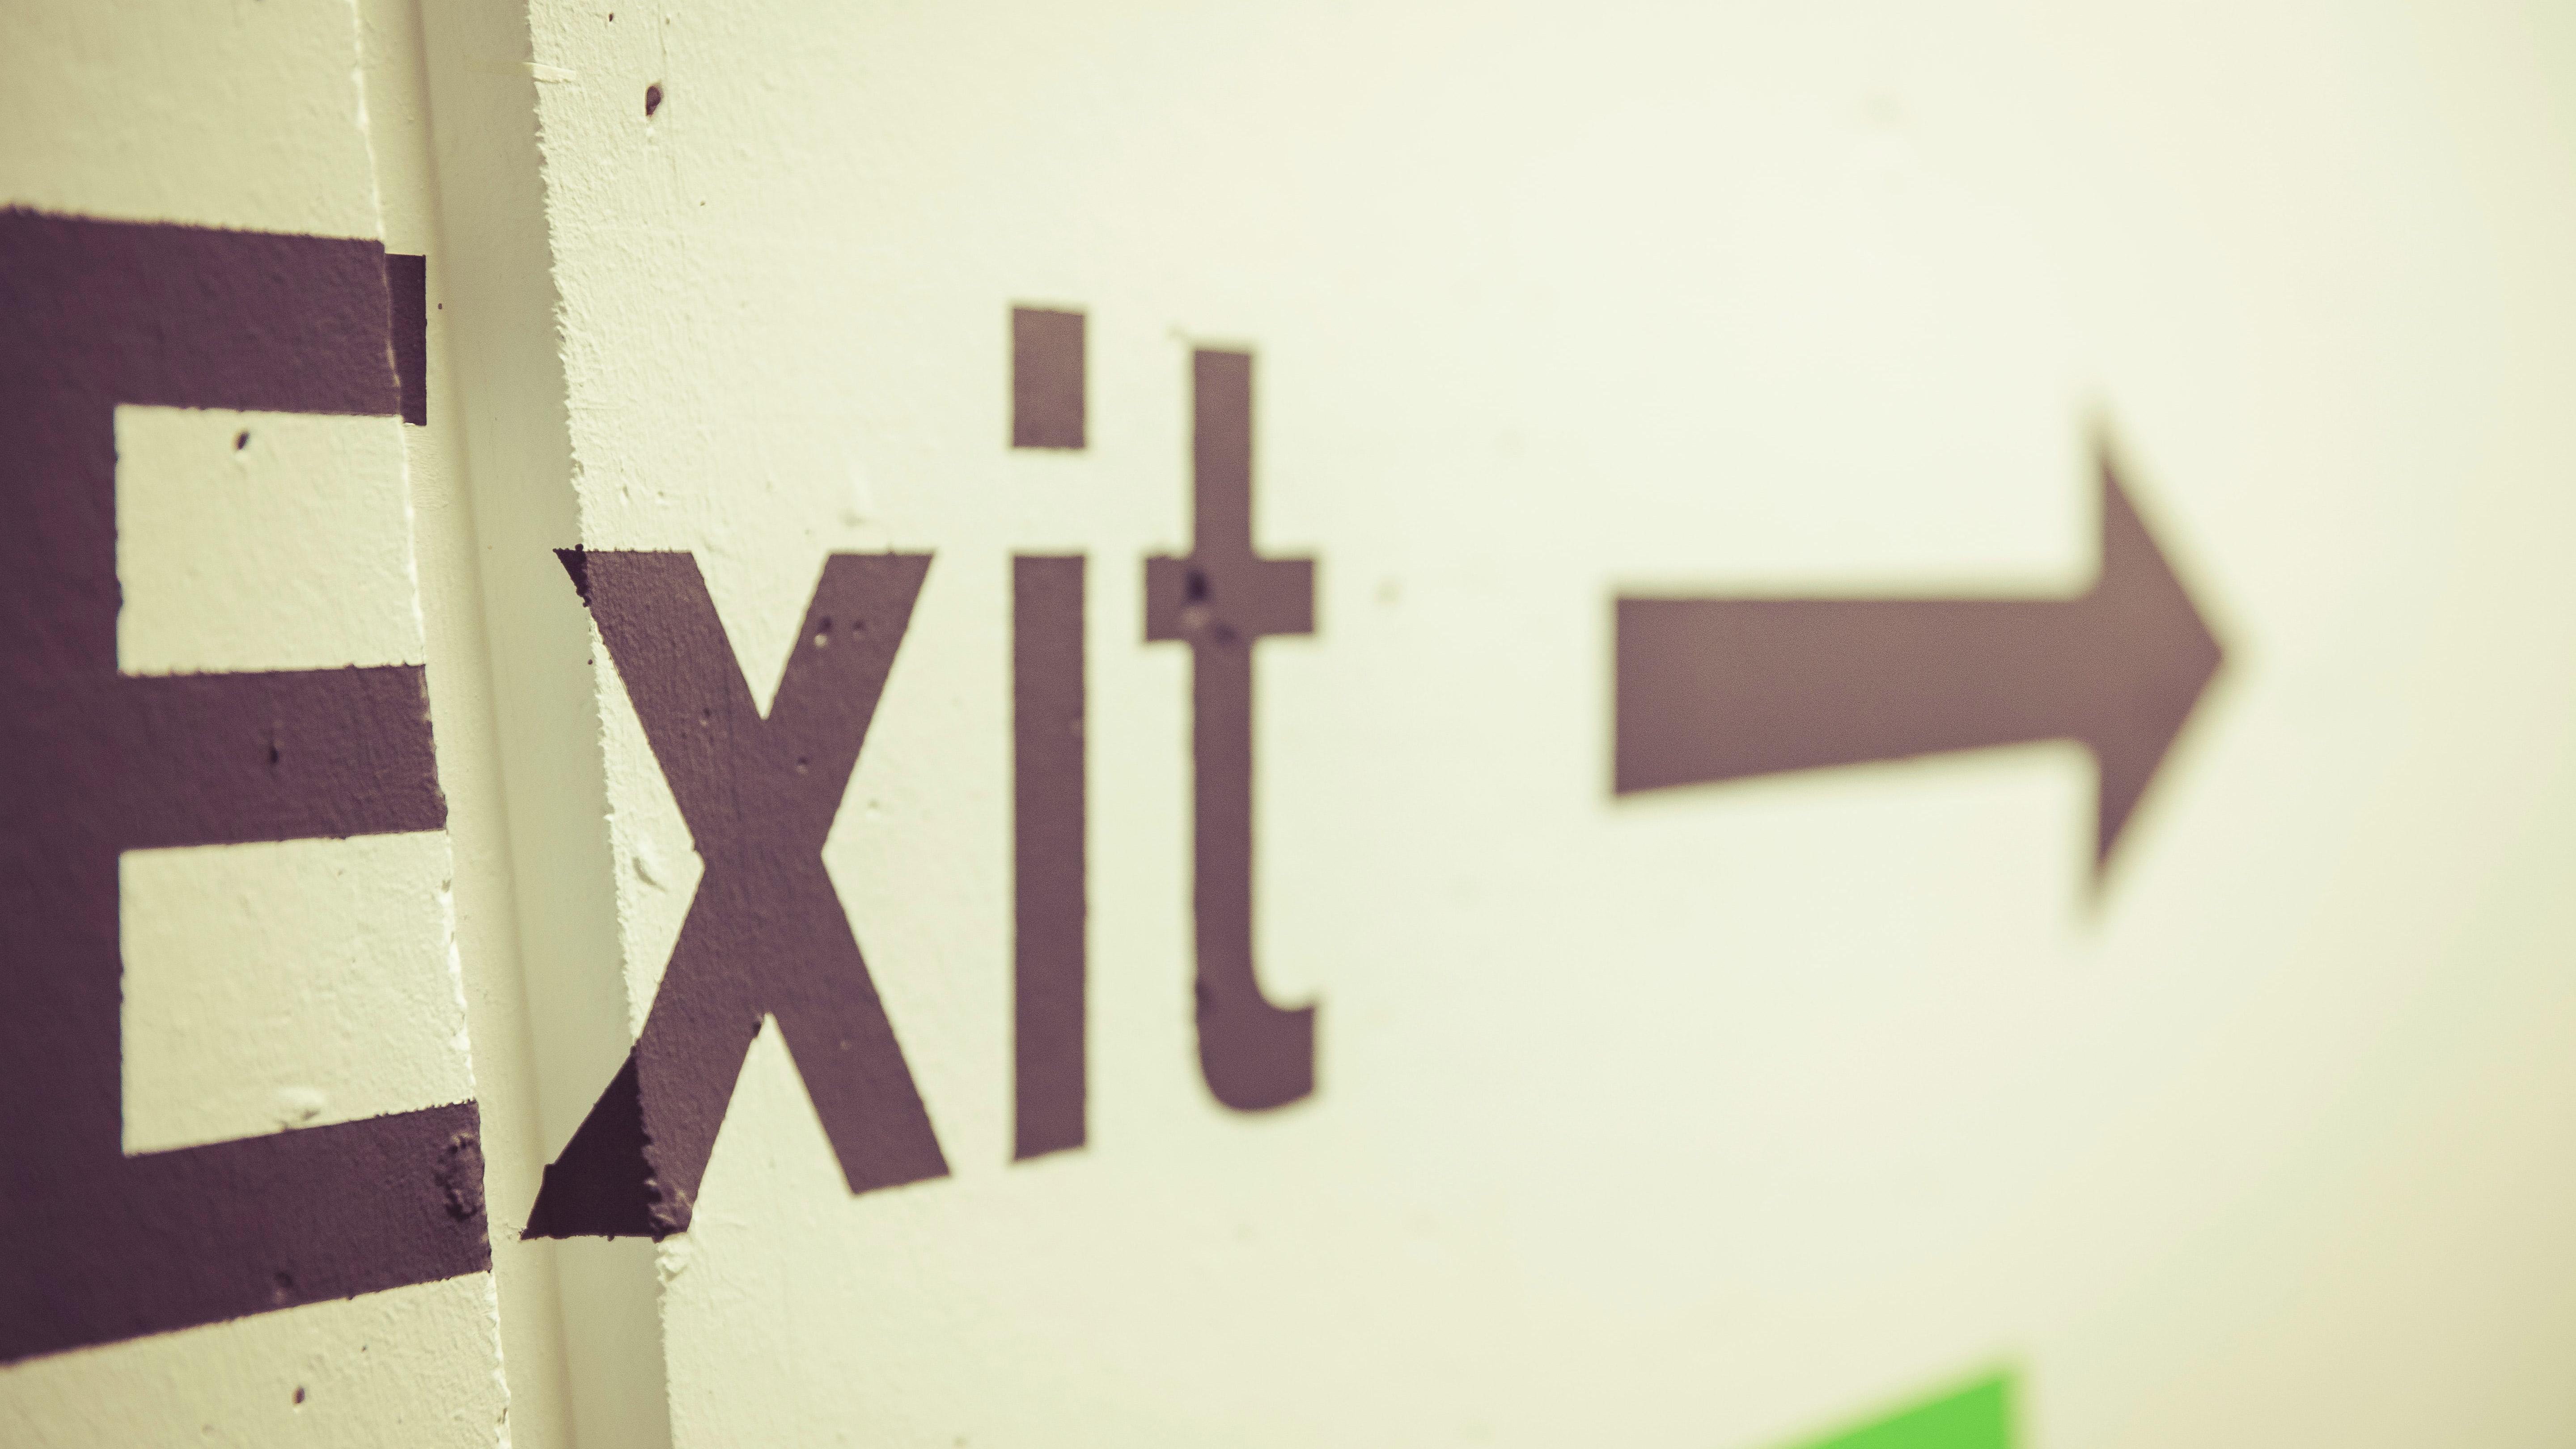 Bild: Das Wort Exit und ein Pfeil auf einer Wand